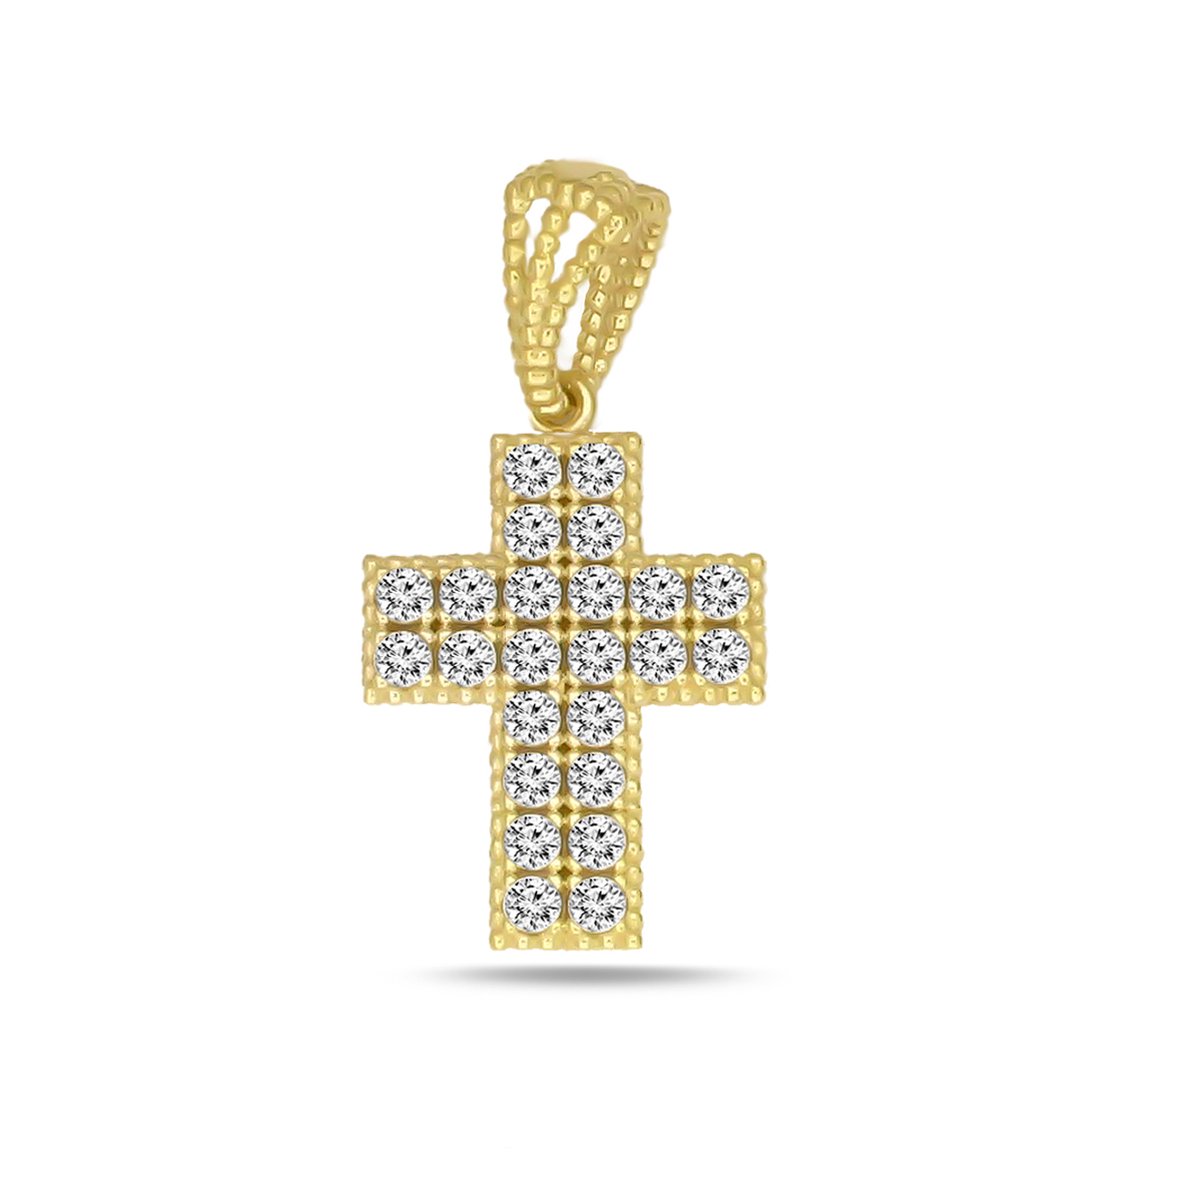 Juwelier Zwartevalk 14 karaat gouden kruis hanger met zirkonia - 14.294/15x10